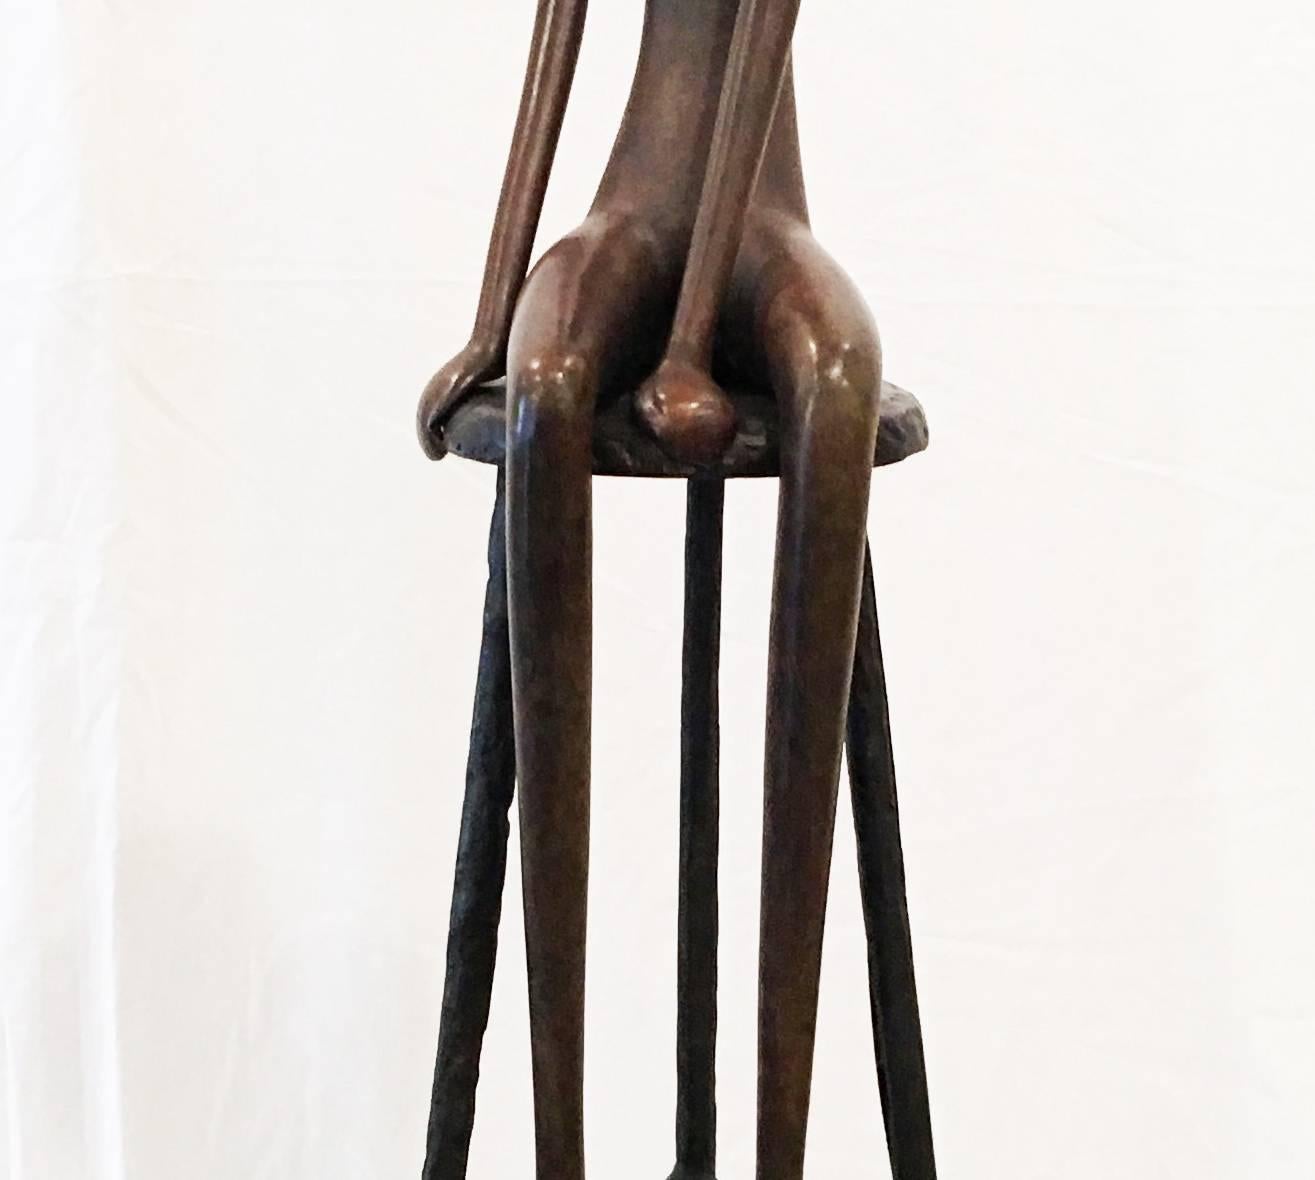 Mann auf Hocker, Bronzeskulptur – Auflage 7 von 25 Stück (Moderne), Sculpture, von Ruth Bloch